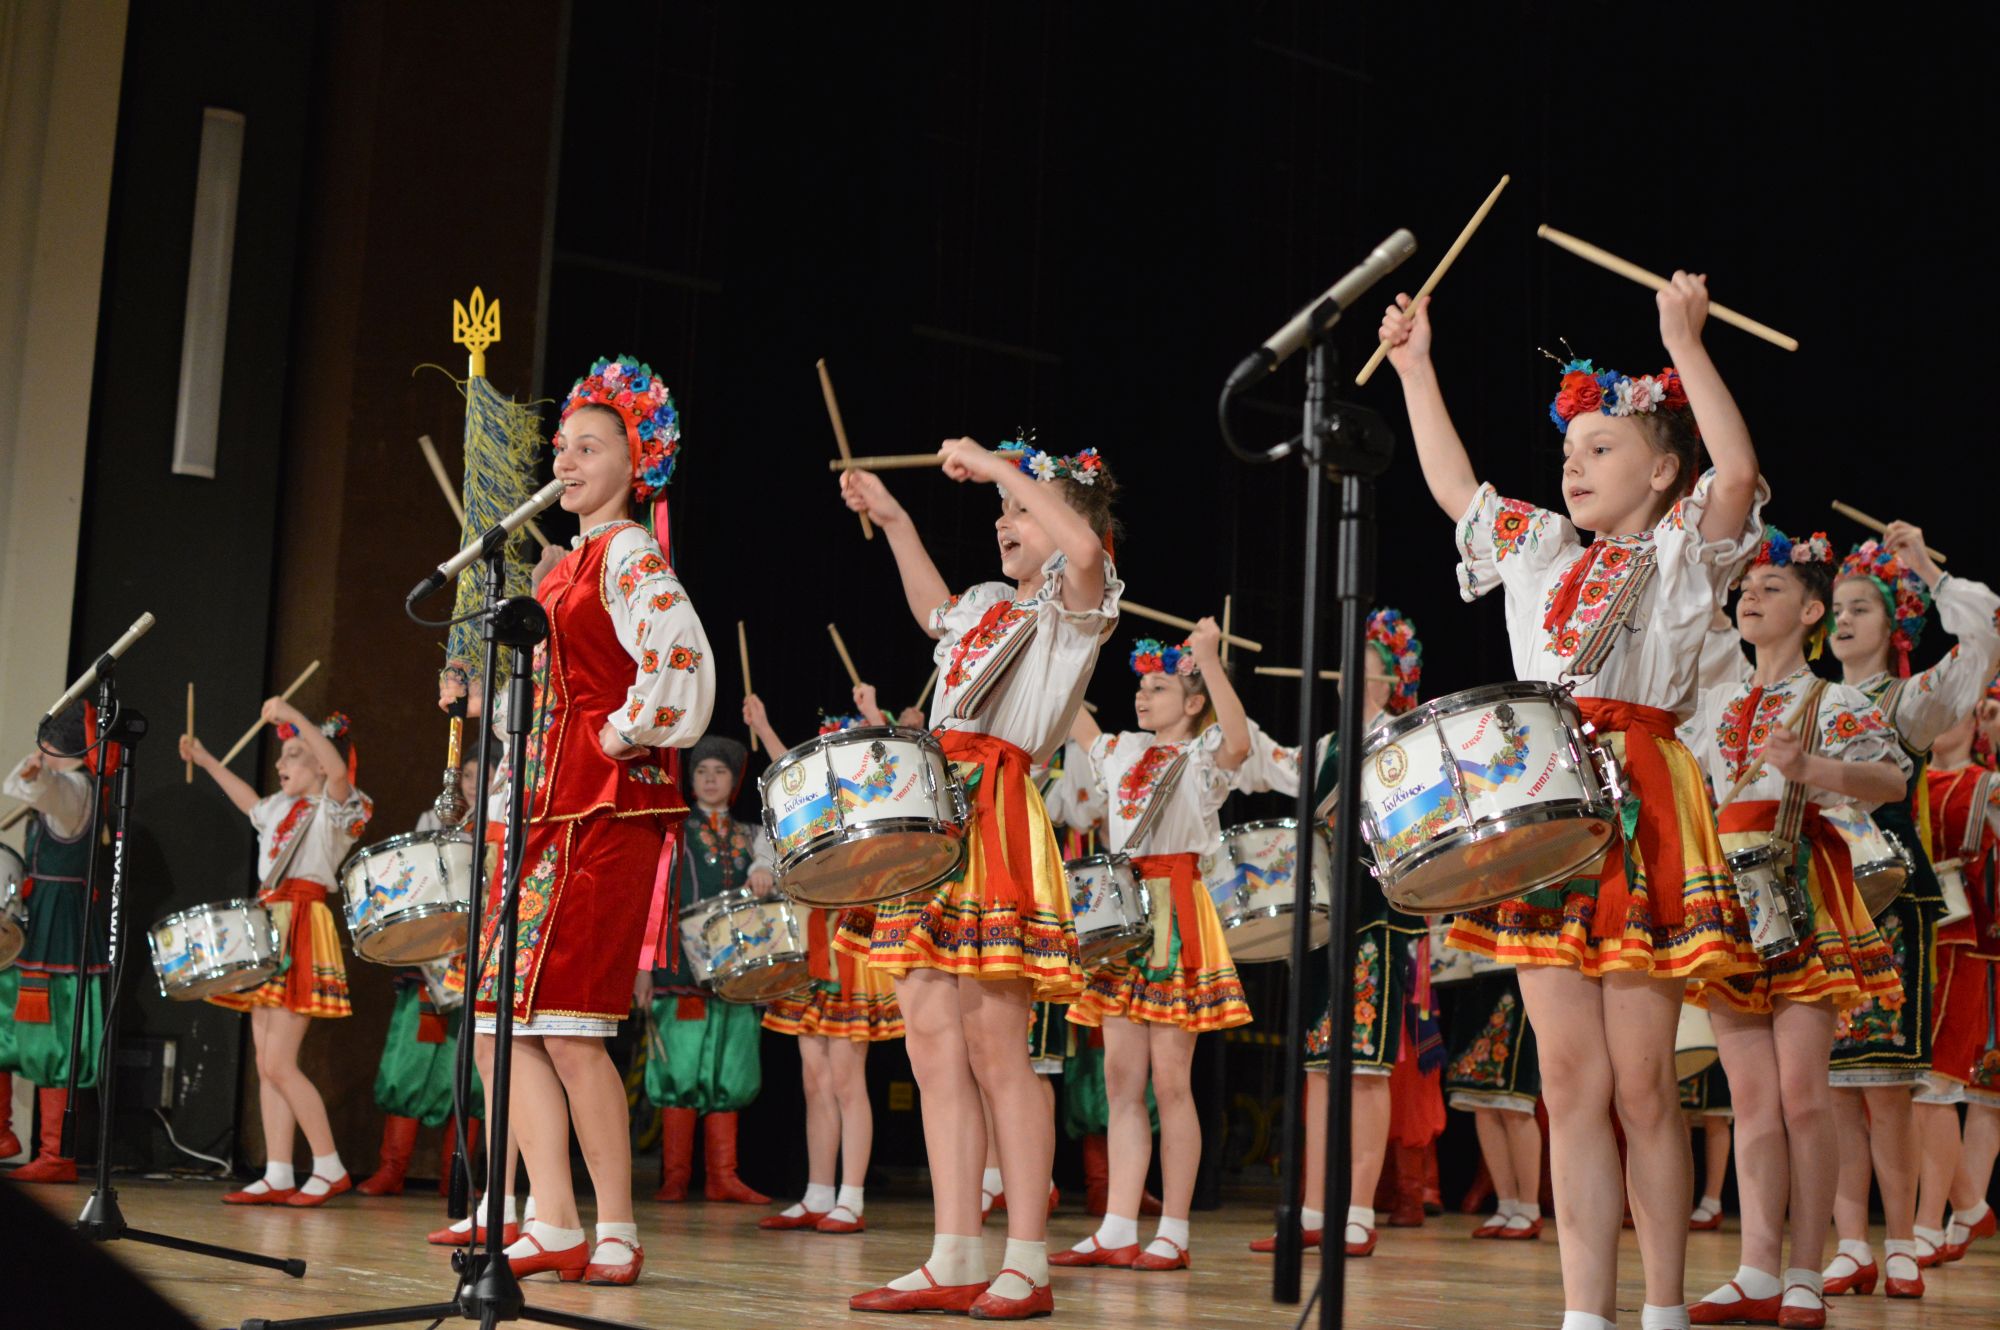 Występy zespołu z Winnicy obfitują zarówno w grę na bębnach, tańce, jak i utwory wykonywane w języku ukraińskim i polskim